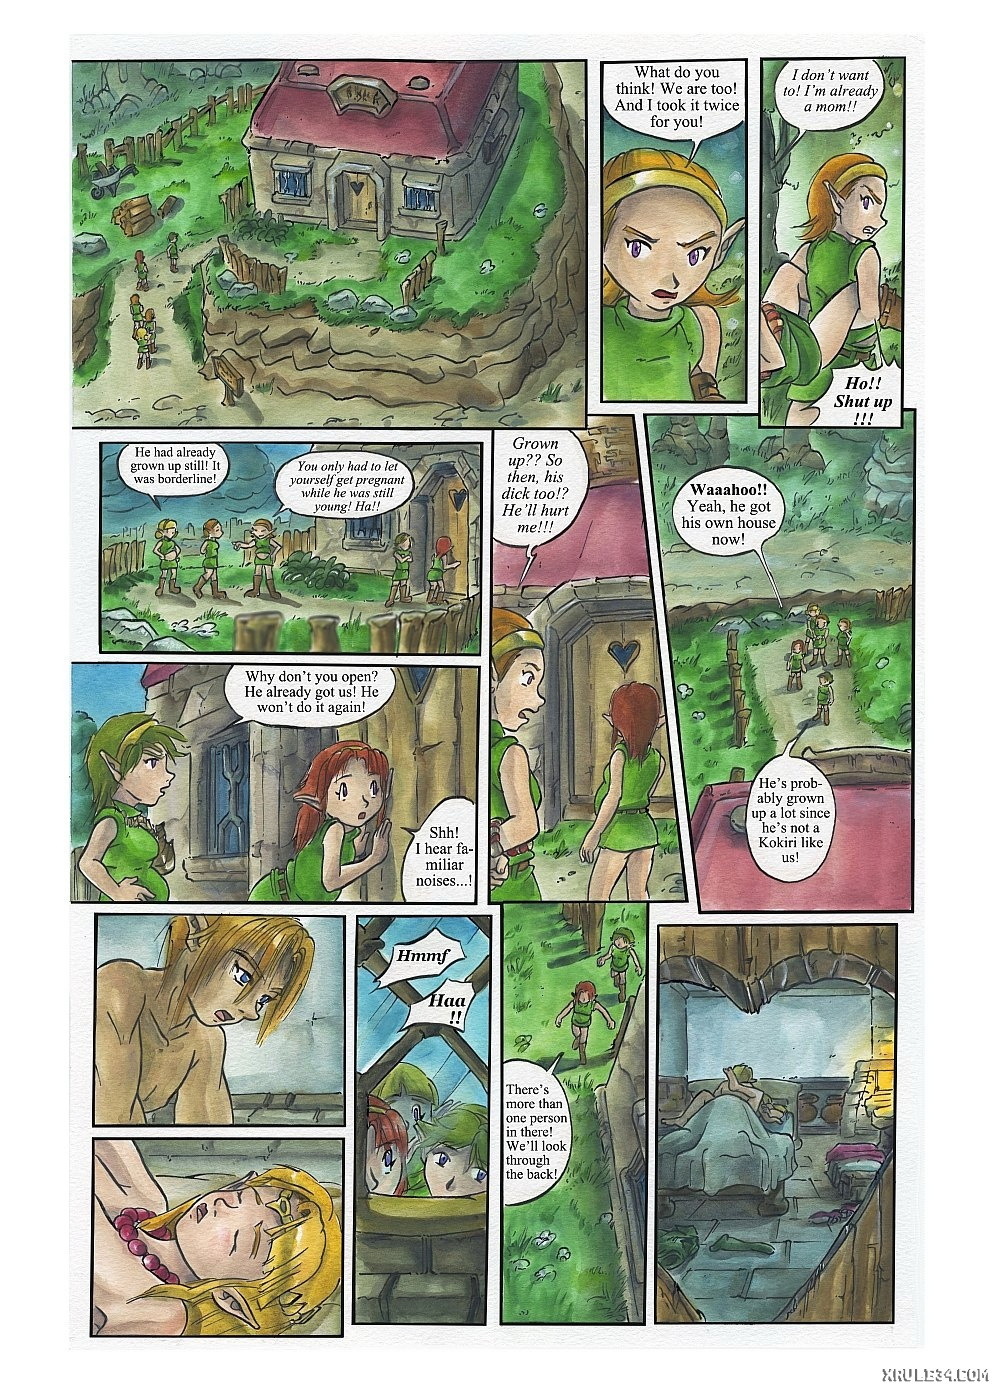 Bad Zelda 2 - Page 2